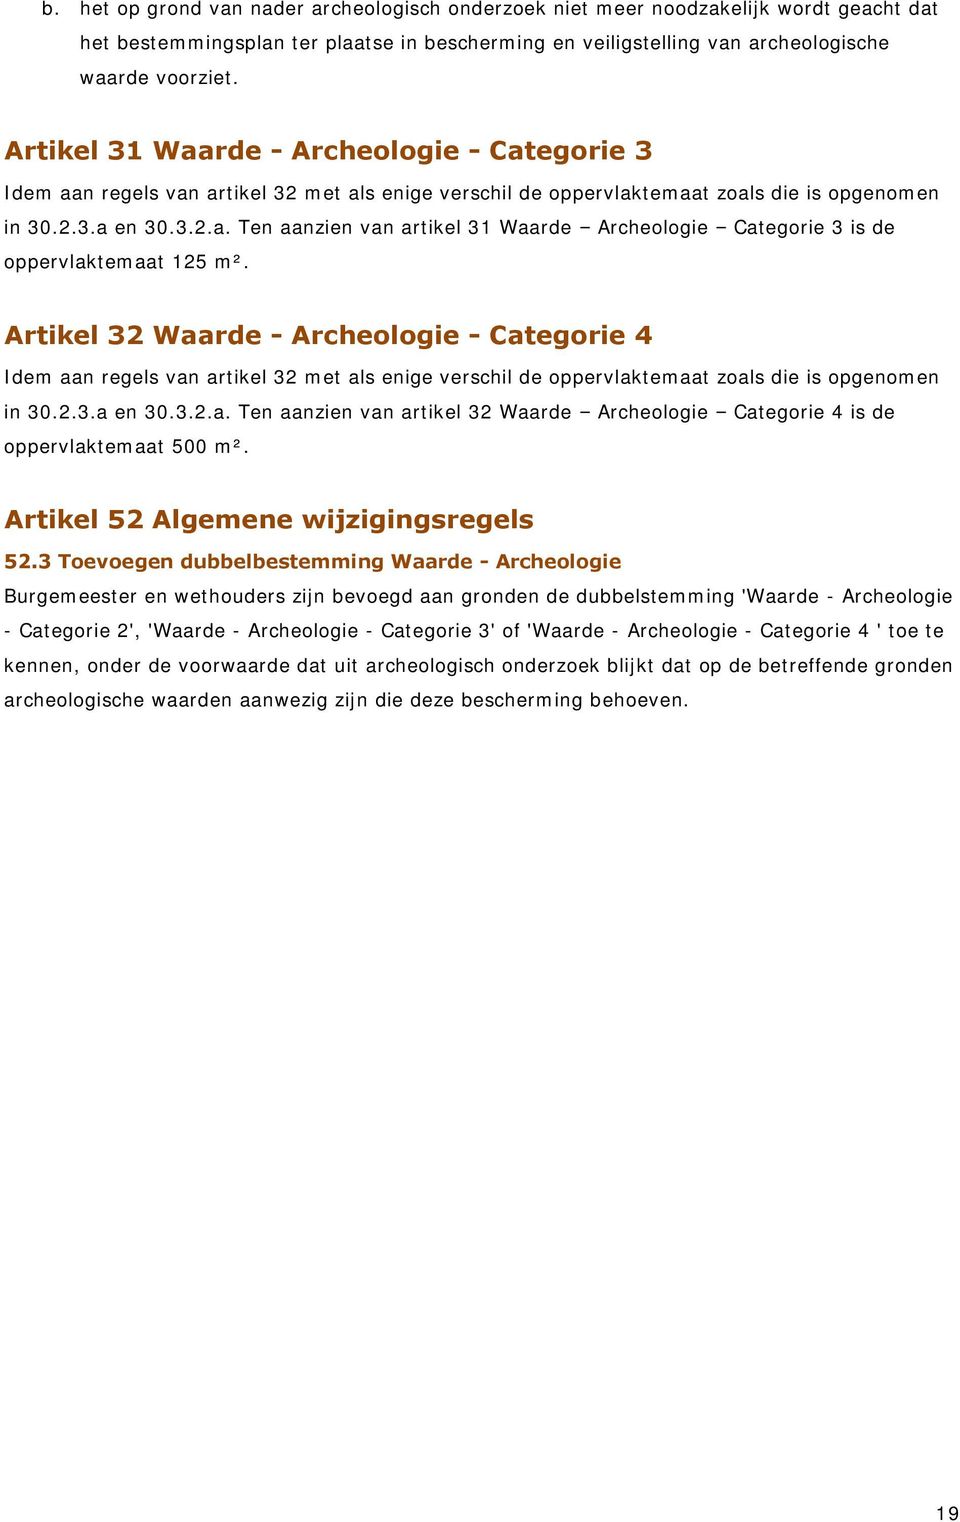 Artikel 32 Waarde - Archeologie - Categorie 4 Idem aan regels van artikel 32 met als enige verschil de oppervlaktemaat zoals die is opgenomen in 30.2.3.a en 30.3.2.a. Ten aanzien van artikel 32 Waarde Archeologie Categorie 4 is de oppervlaktemaat 500 m².